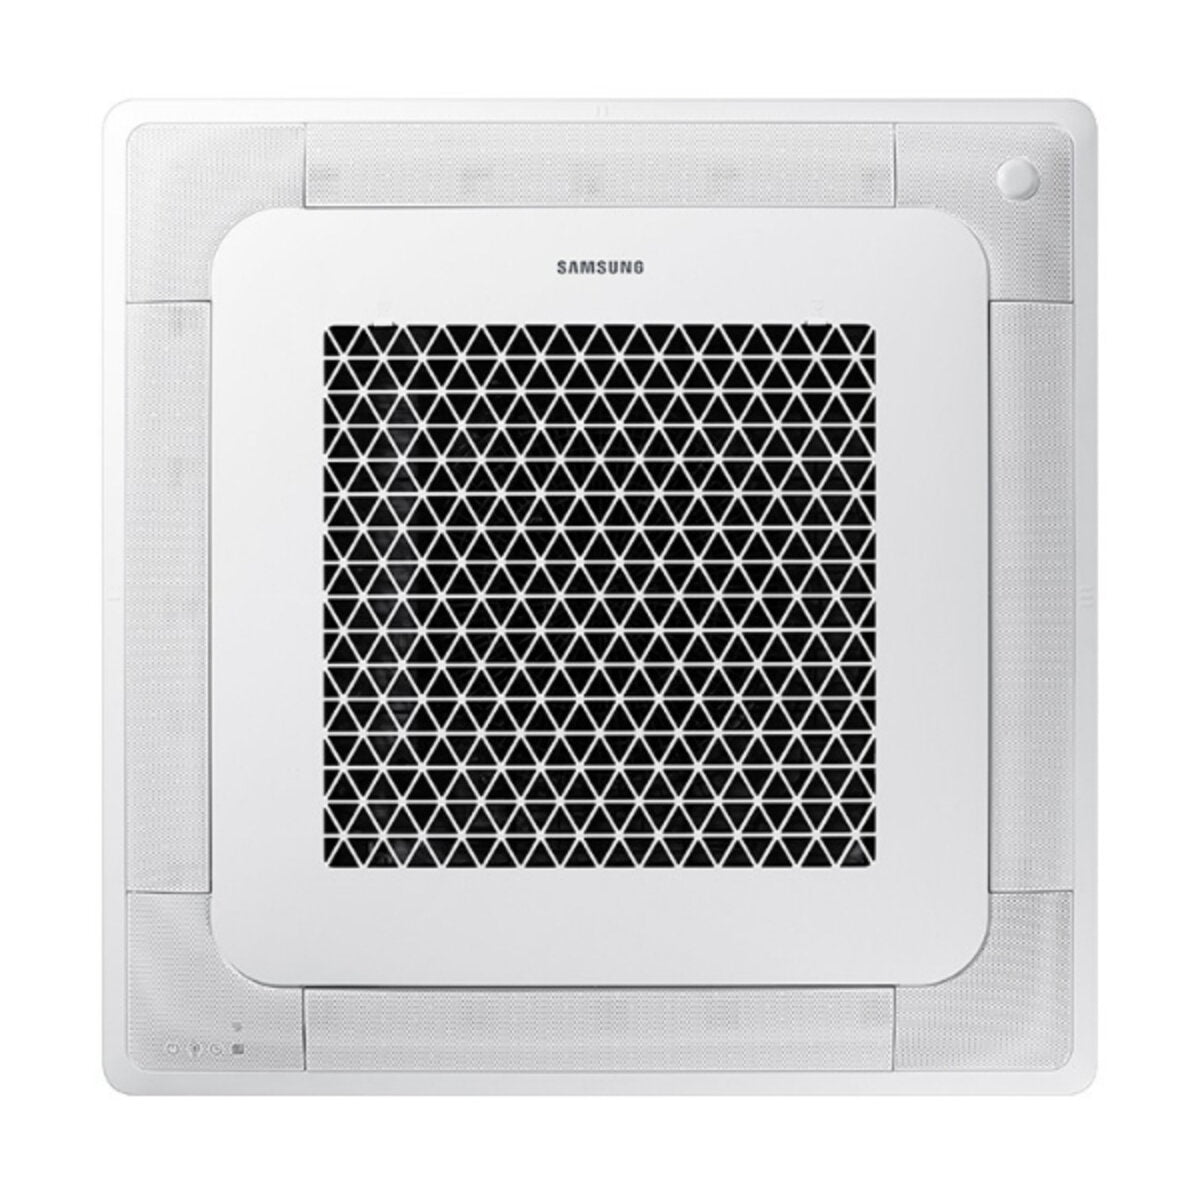 Samsung Air conditioner Windfree 4-way penta split 9000 + 9000 + 9000 + 9000 + 12000 BTU inverter A ++ outdoor unit 10.0 kW